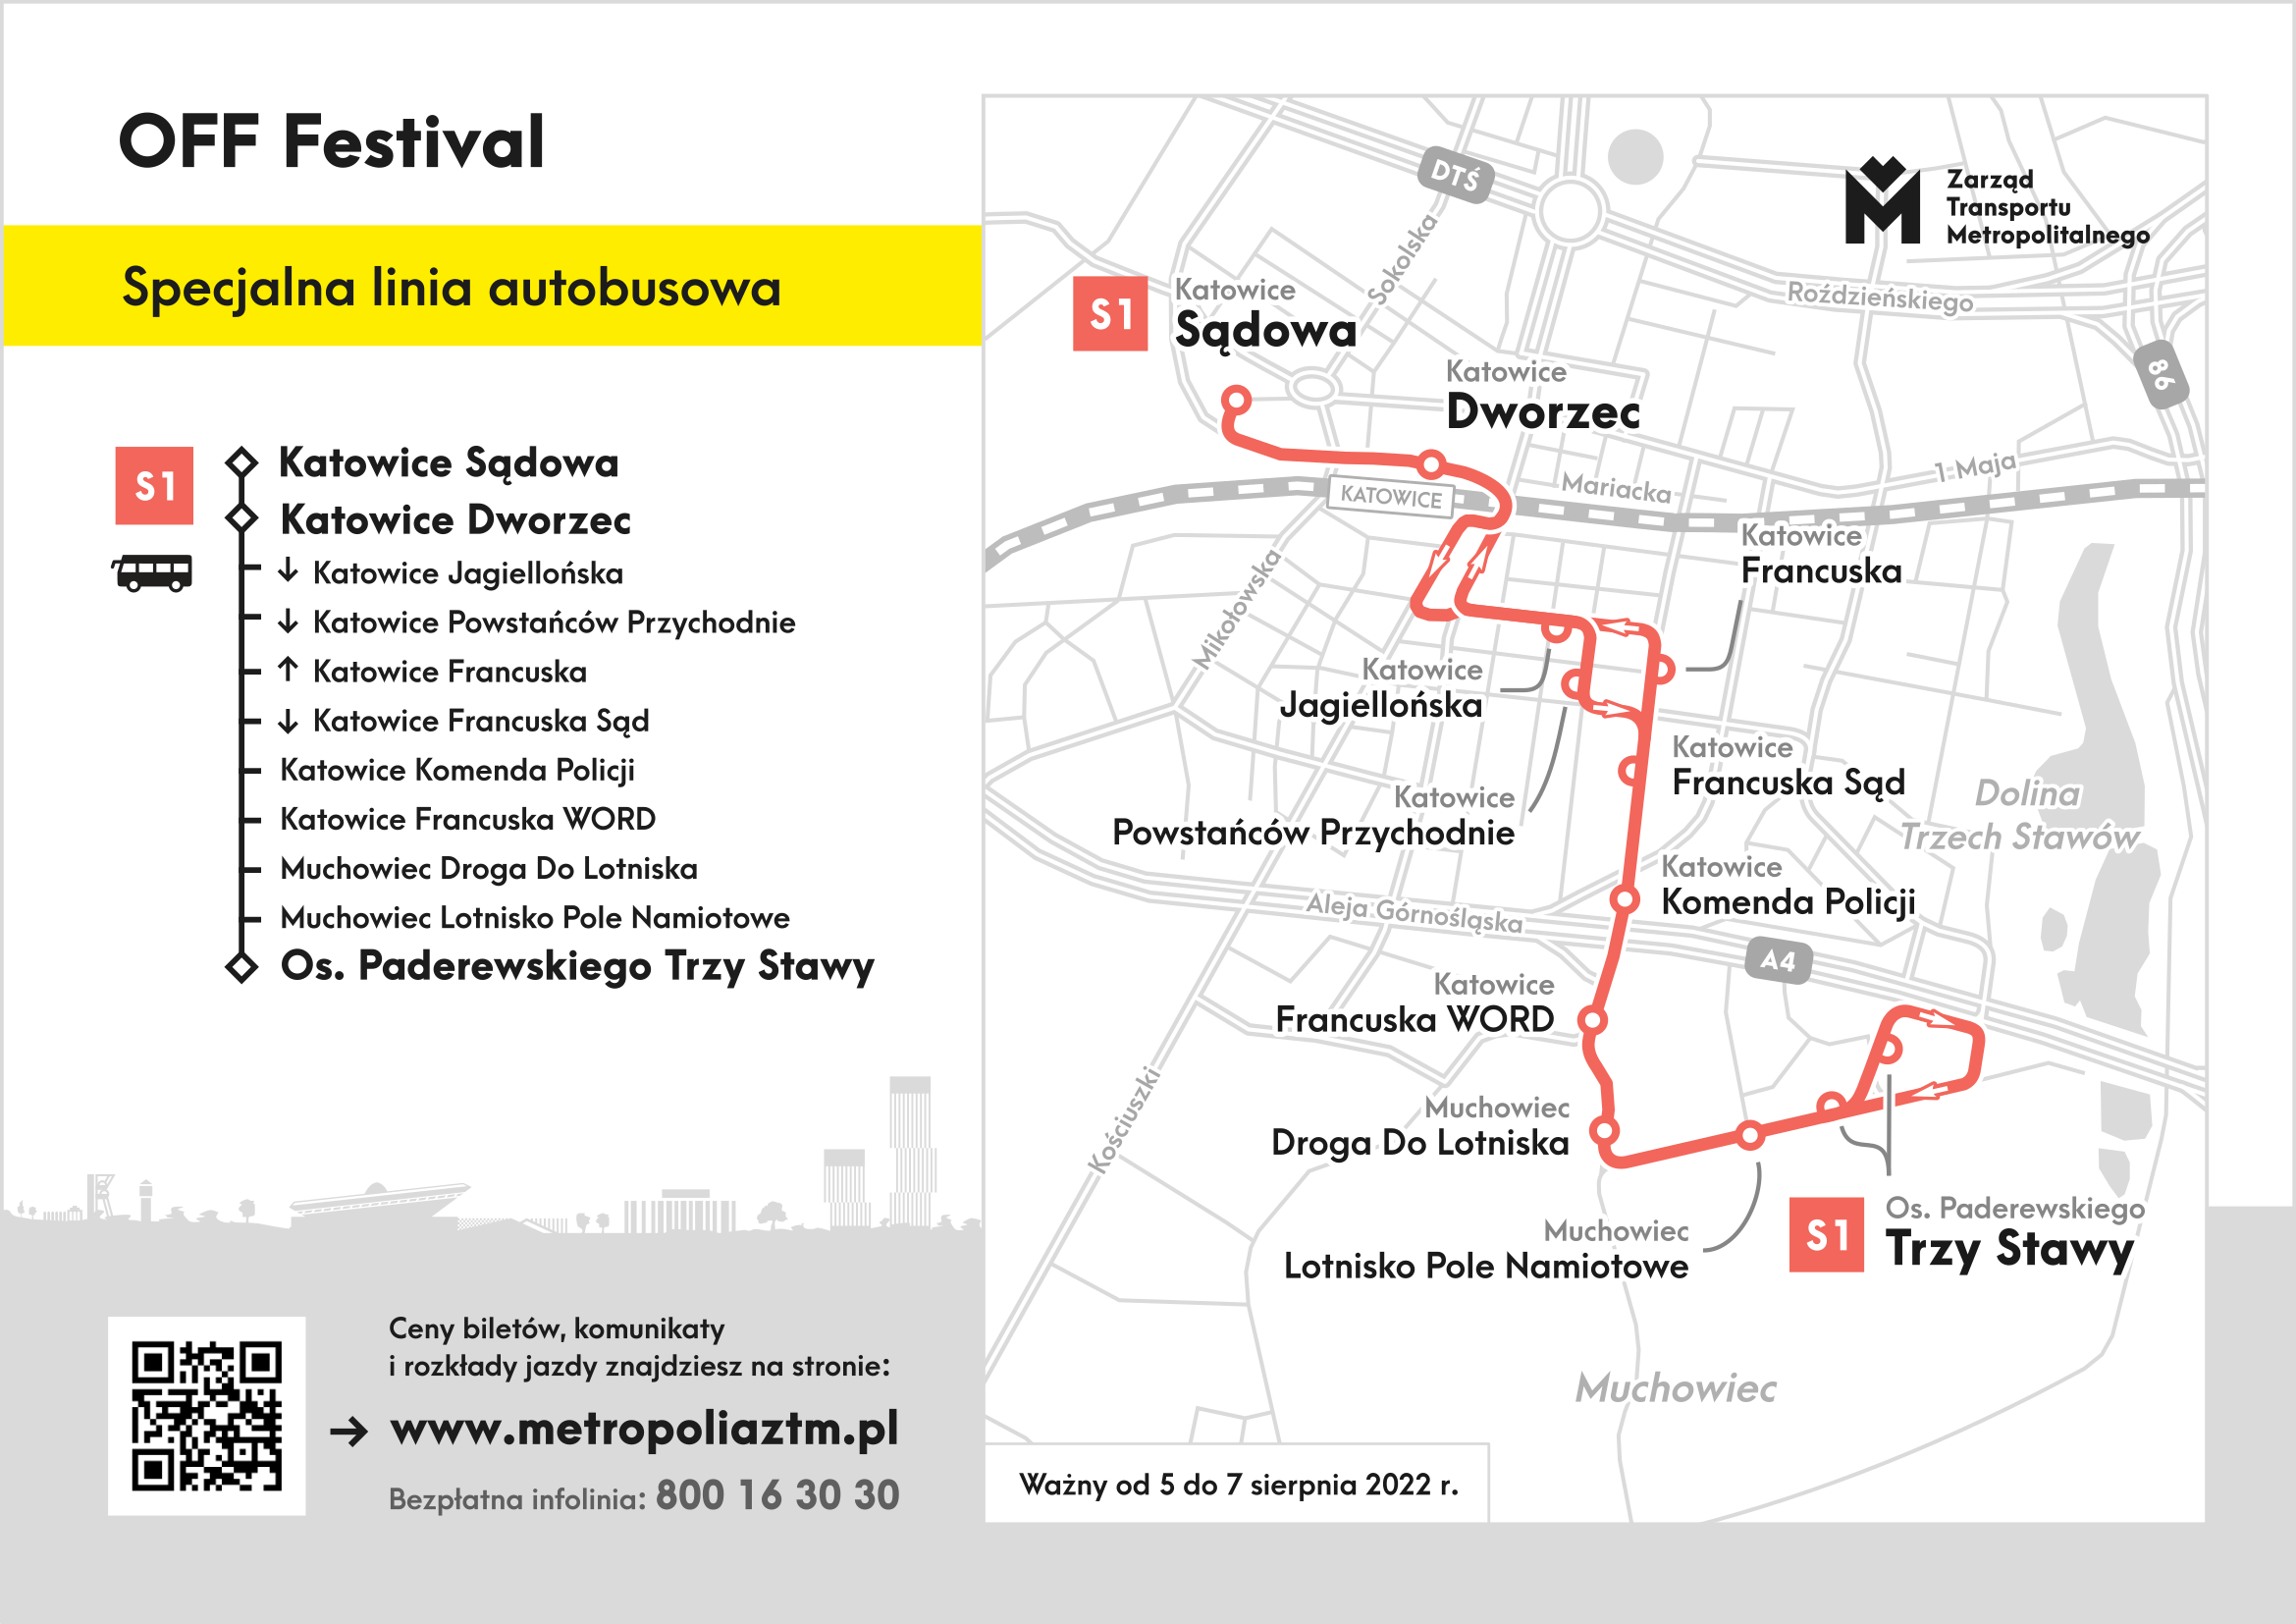 Mapa dojazdu linii specjalnej na OFF Festiwal